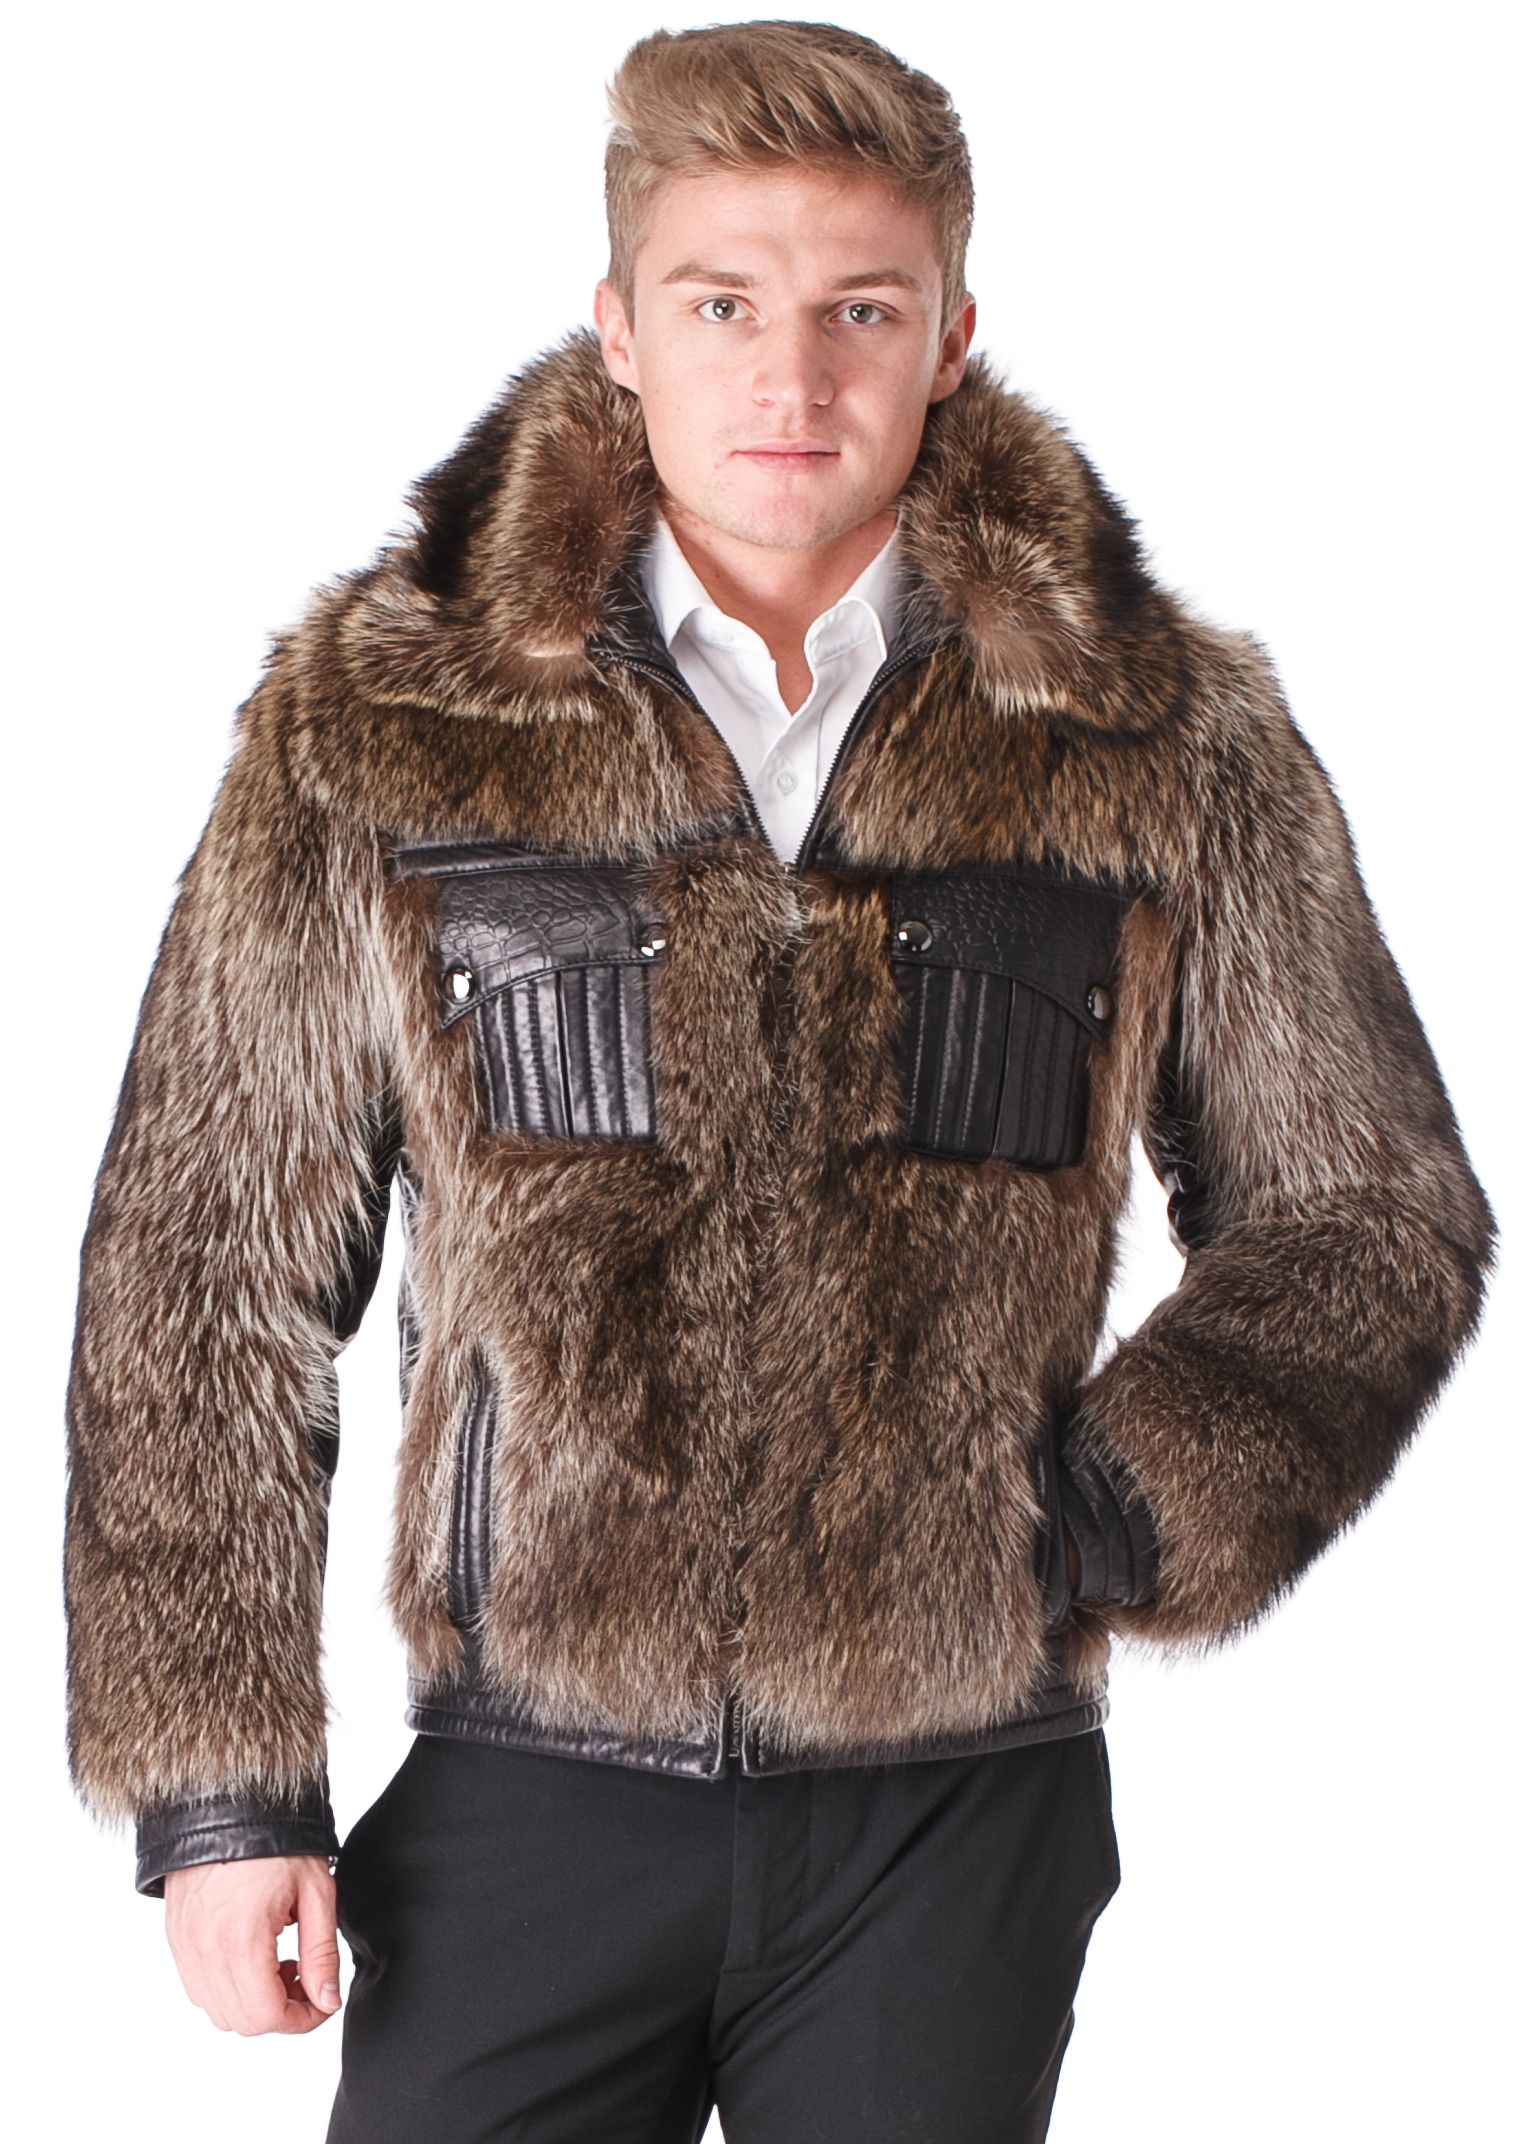 Куртка меховая мужская купить. Каляев койот мужская шуба. Меховая куртка мужская. Куртка из волка мужская. Куртка из меха волка мужская.